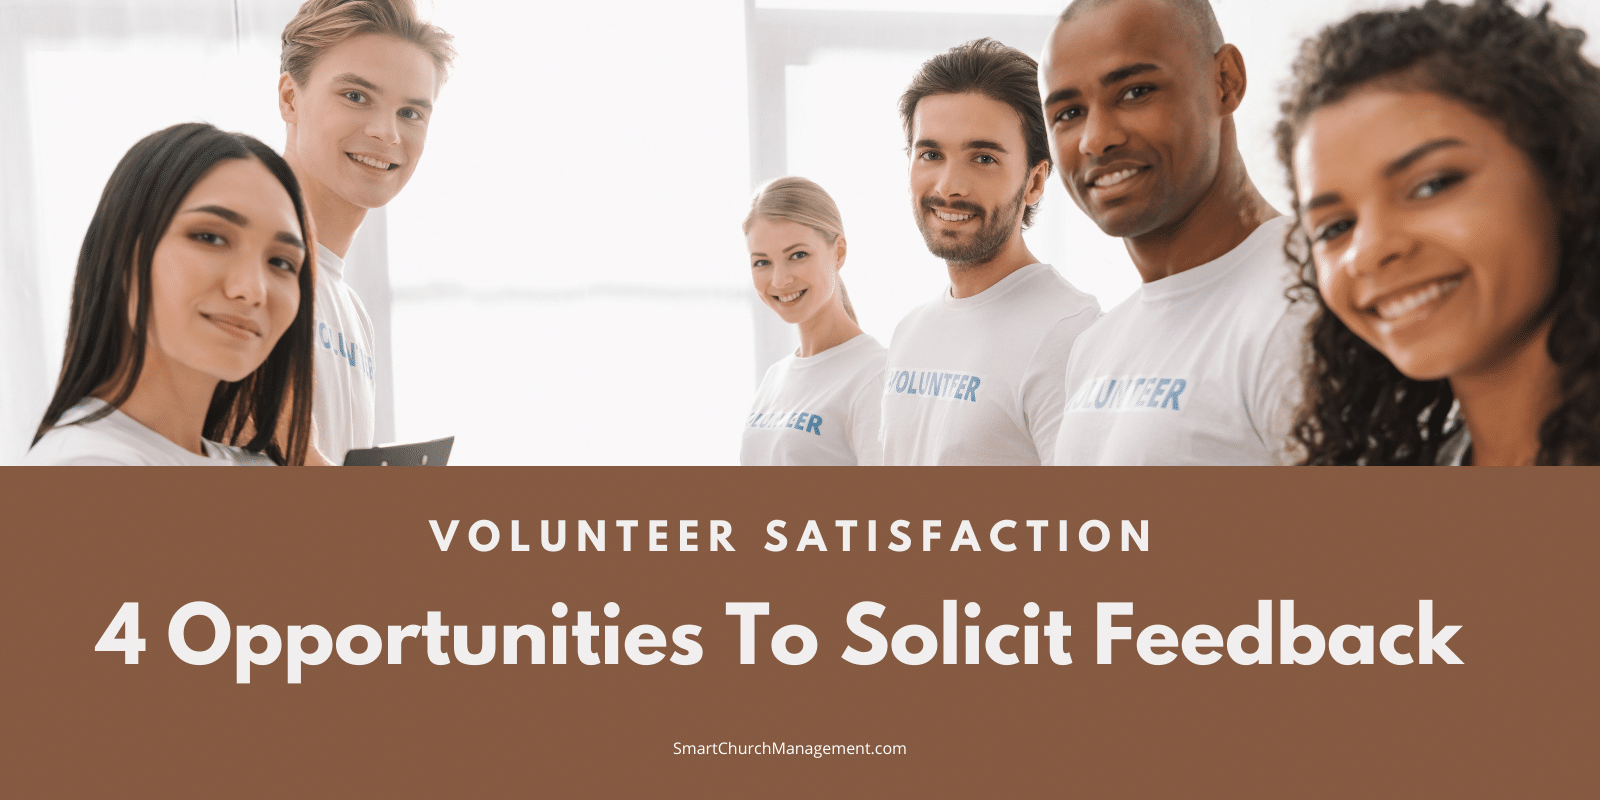 Volunteer Satisfaction - how to solicit feedback